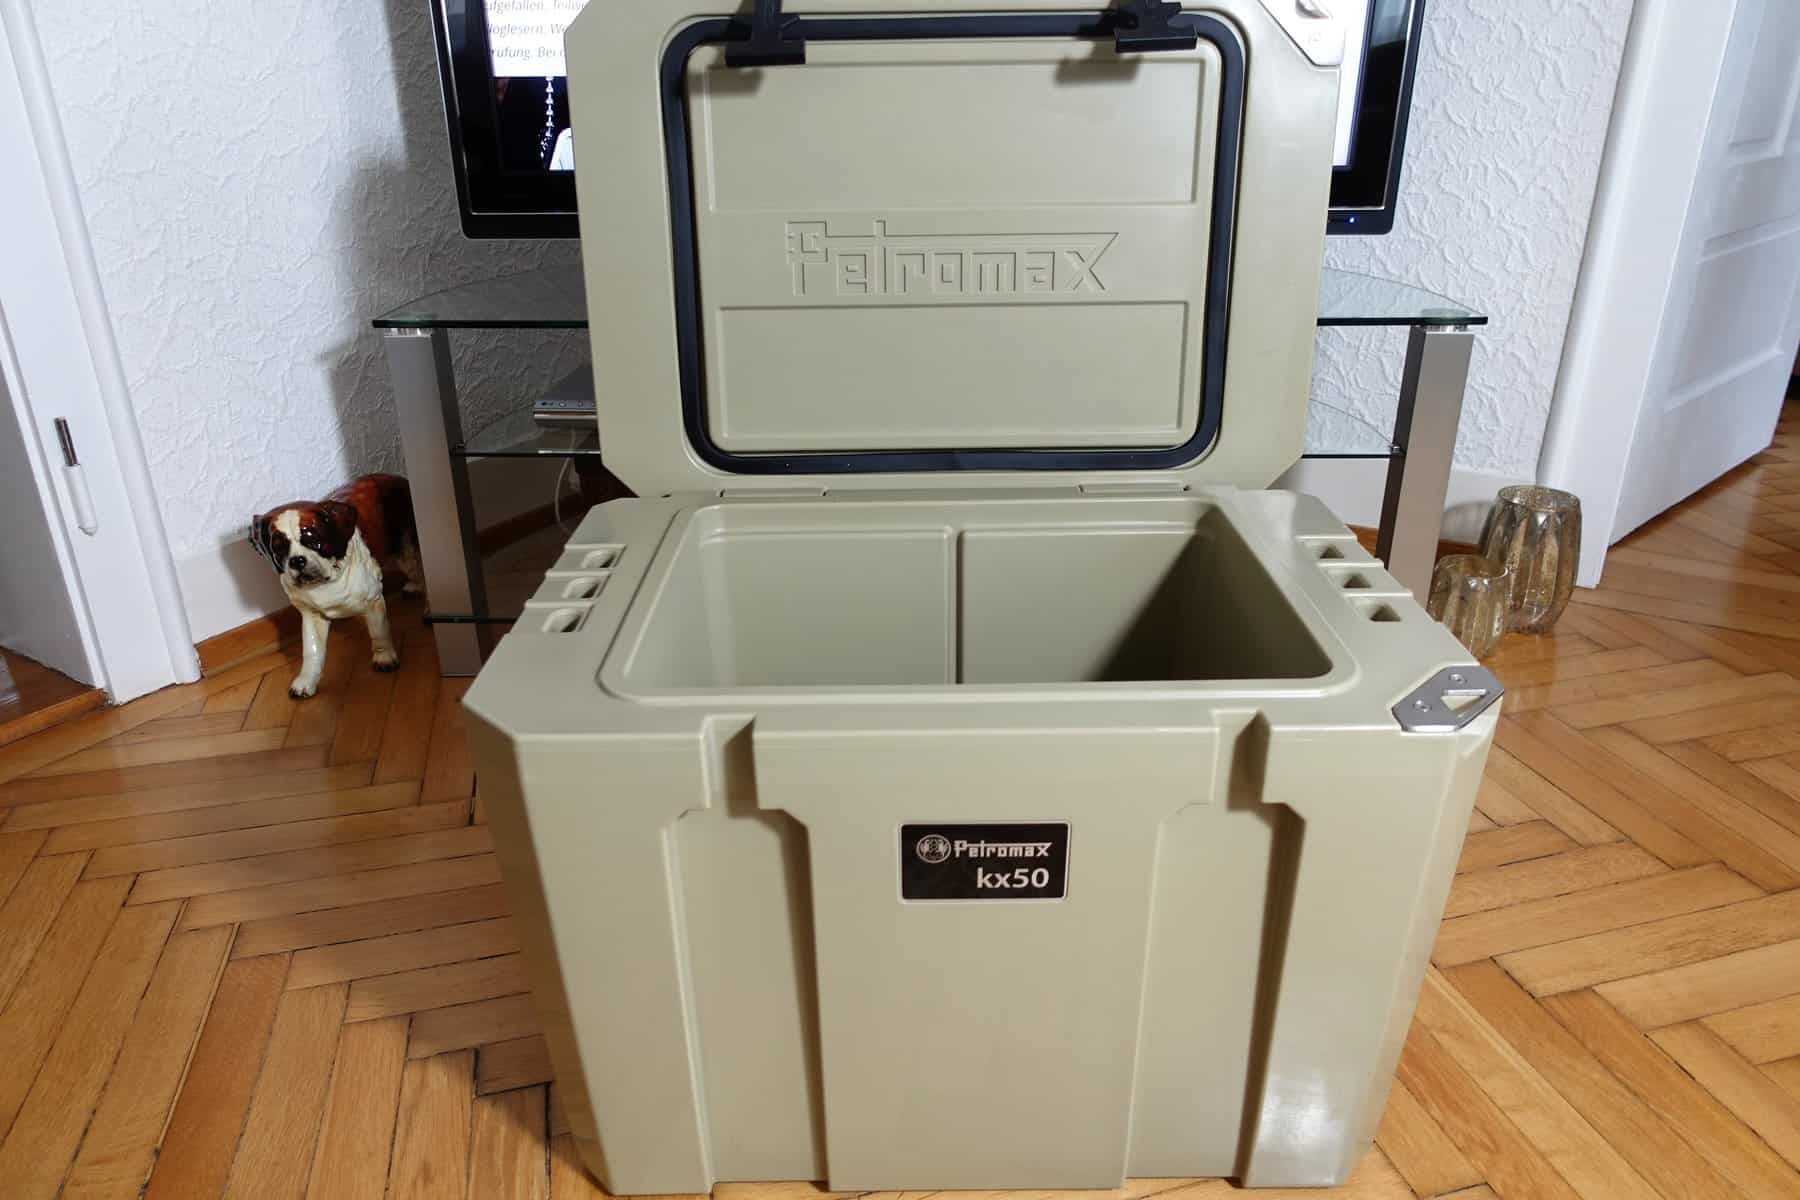 Dometic Kühlbox Test - Kompressor- und Absorberkühlboxen vom